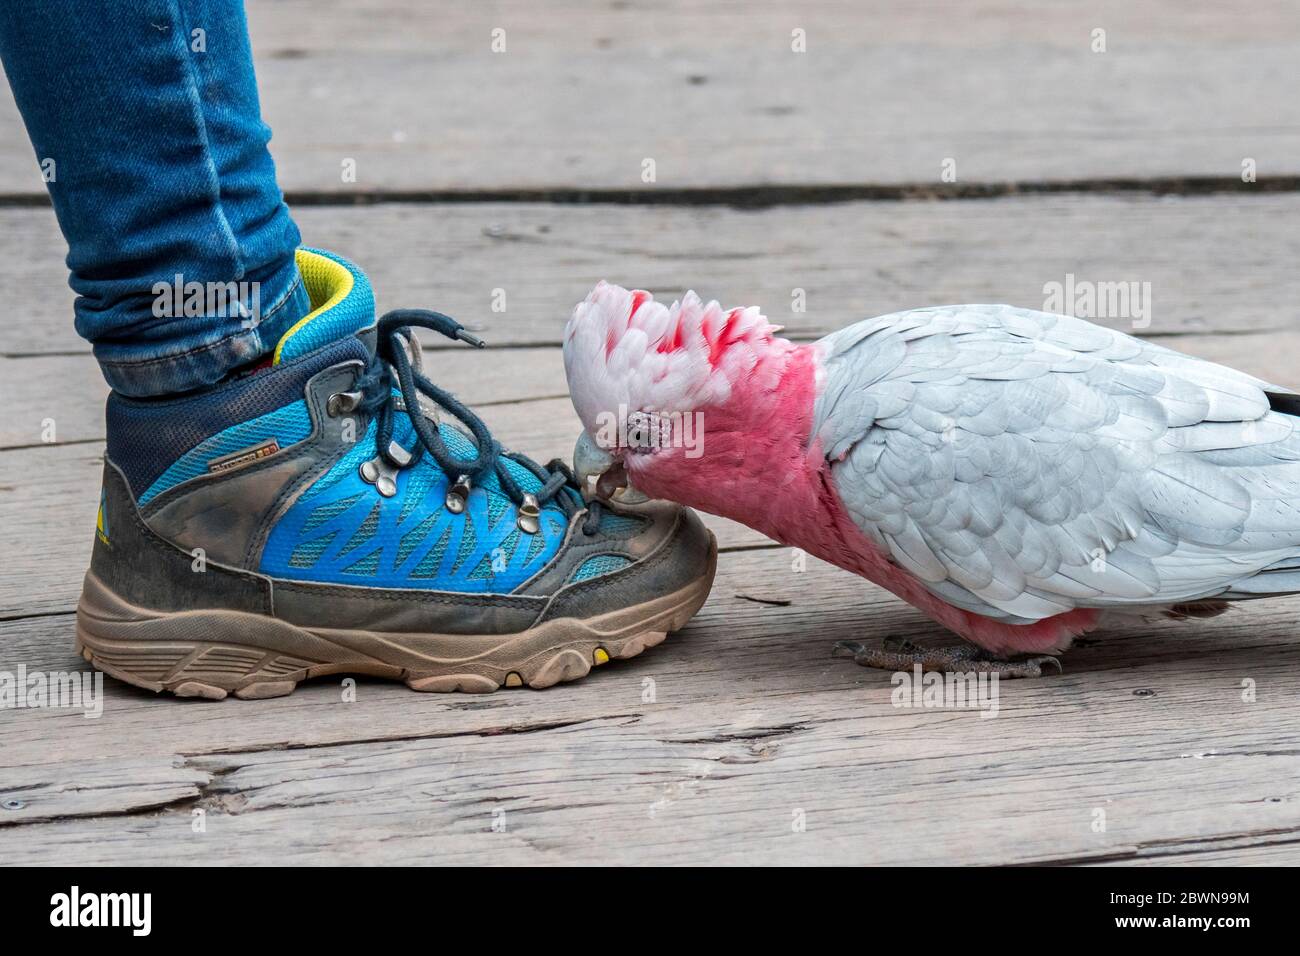 Stringhe scarpe immagini e fotografie stock ad alta risoluzione - Alamy